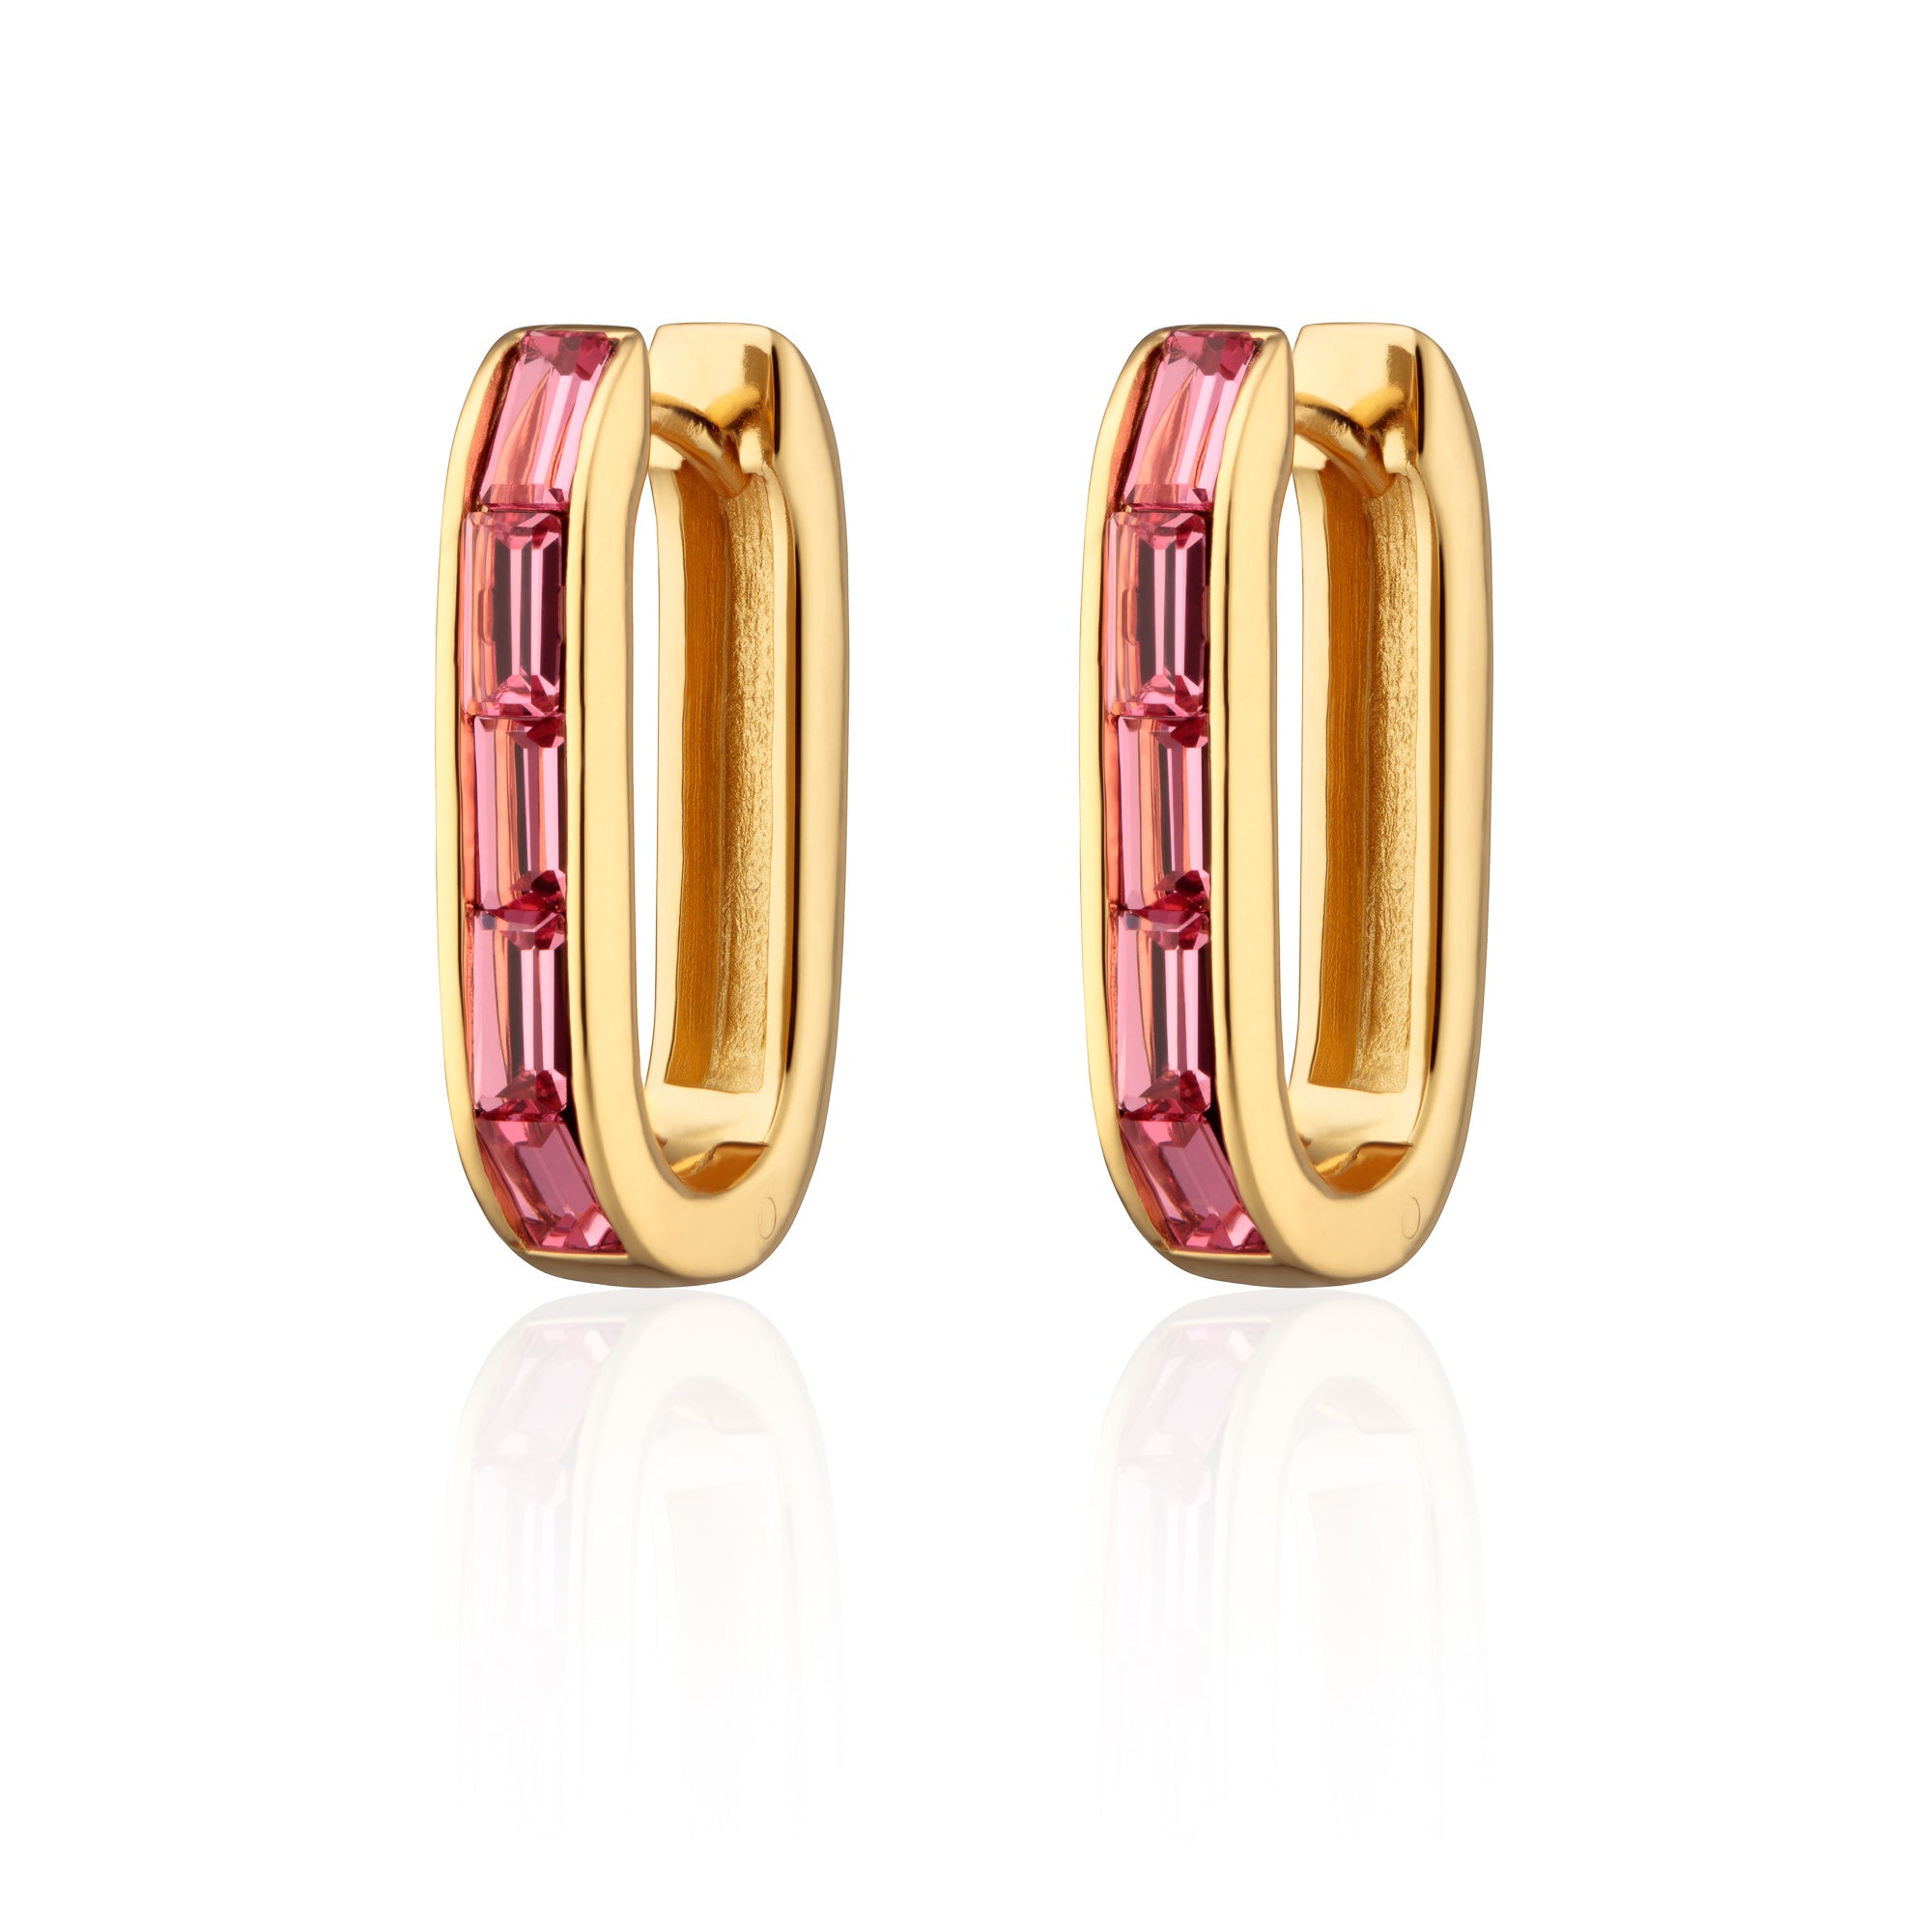 Oval Baguette Hoop Earrings with Pink Stones